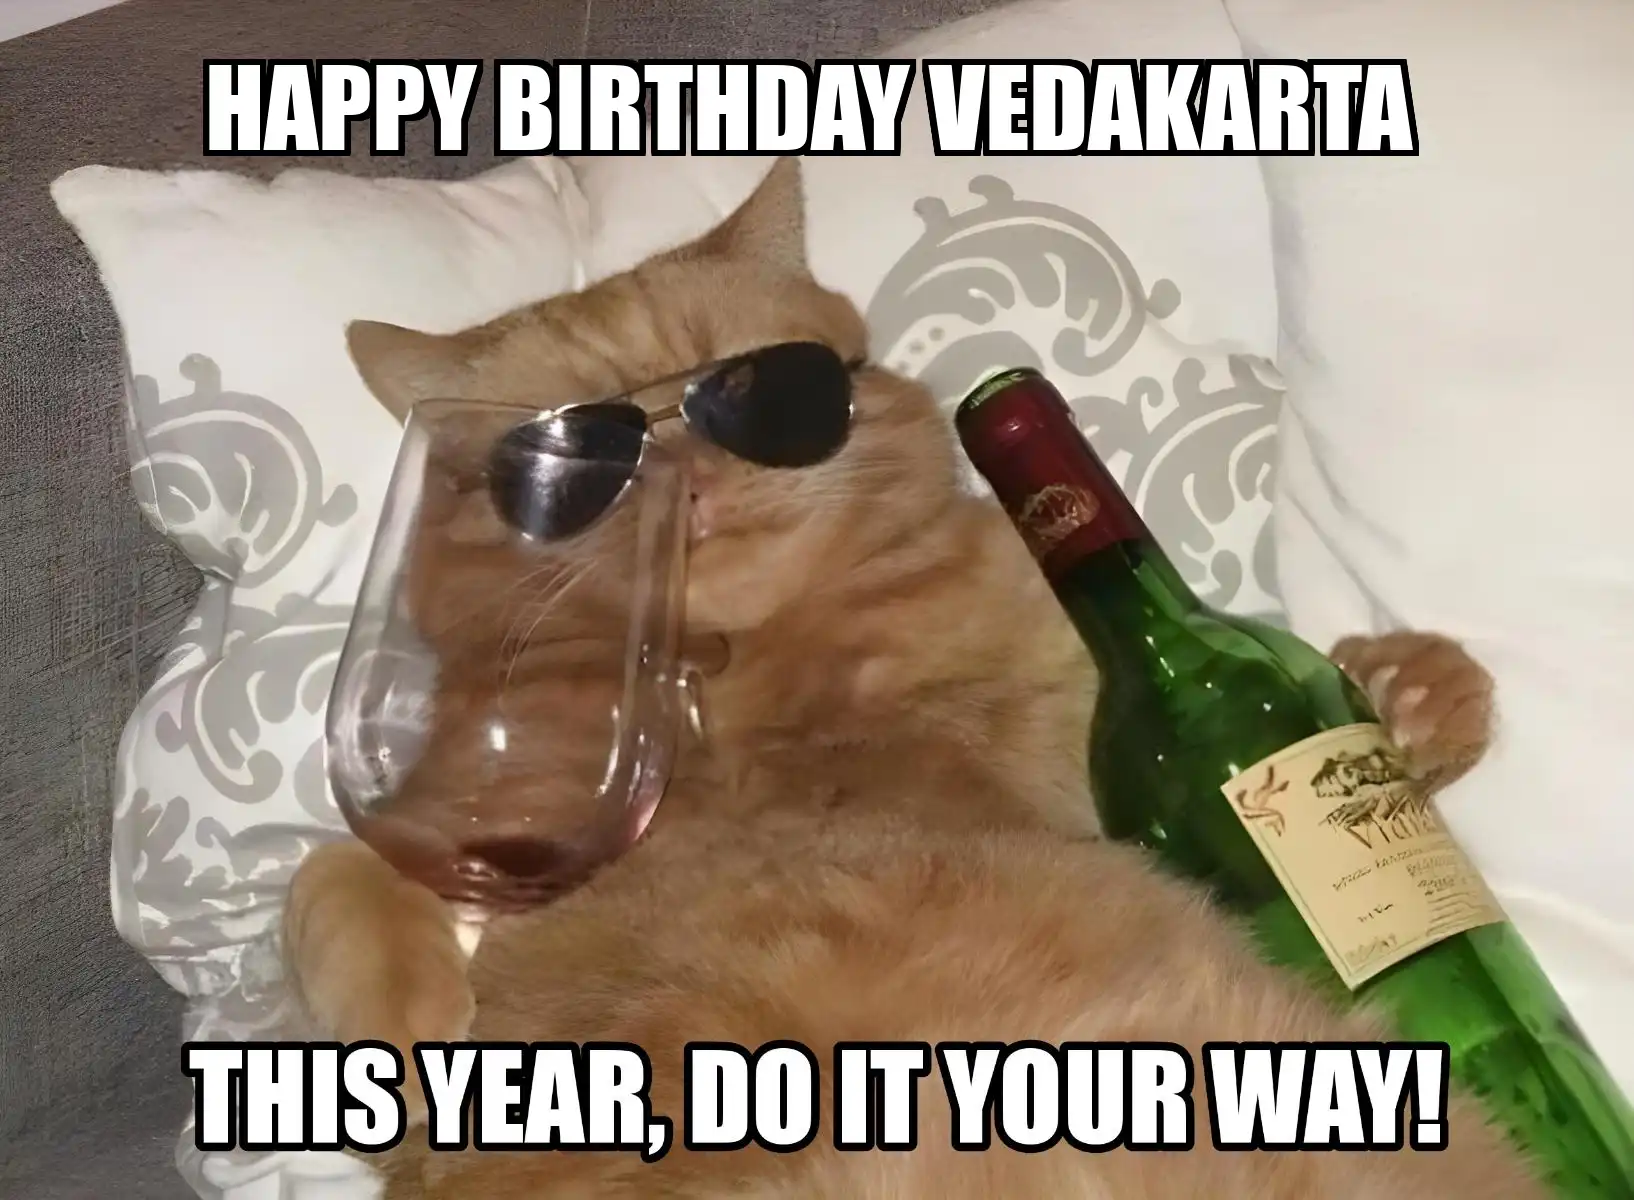 Happy Birthday Vedakarta This Year Do It Your Way Meme